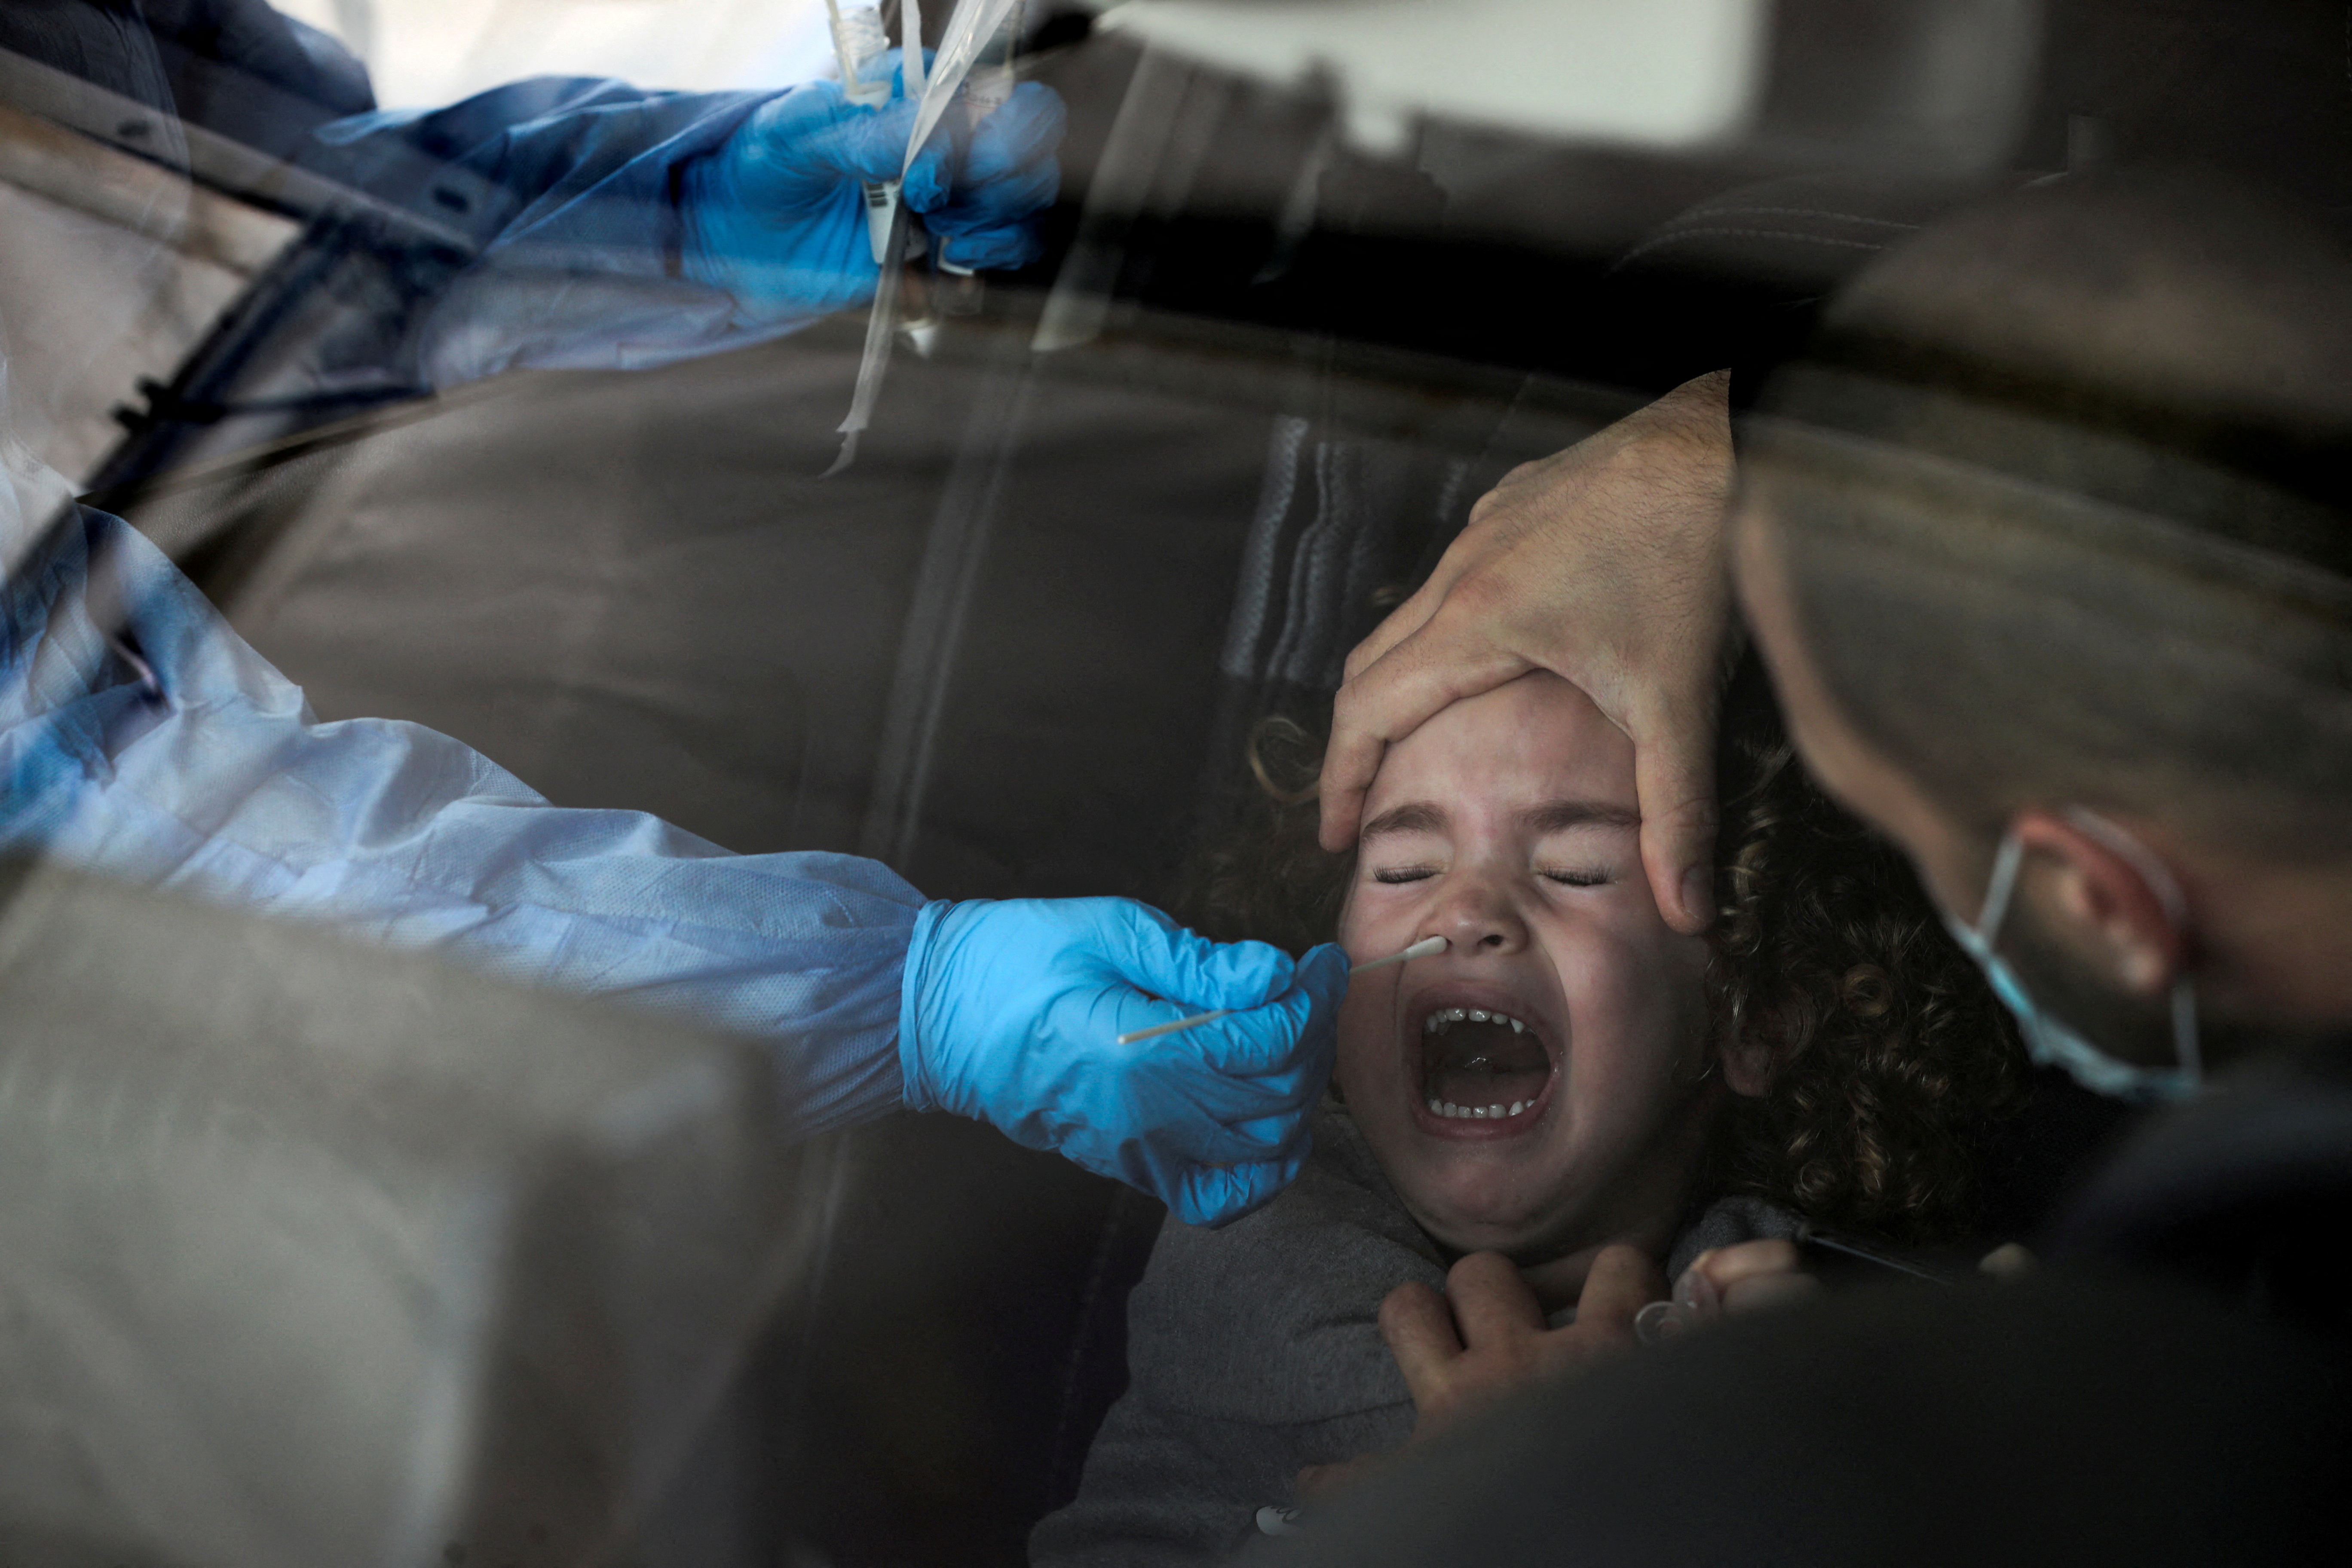 FOTO DE ARCHIVO: Una niña es examinada para detectar la enfermedad del coronavirus (COVID-19) en un lugar de paso mientras Israel enfrenta un aumento en las infecciones de la variante Omicron, en Jerusalén el 3 de enero de 2022. REUTERS / Ammar Awad / File Photo